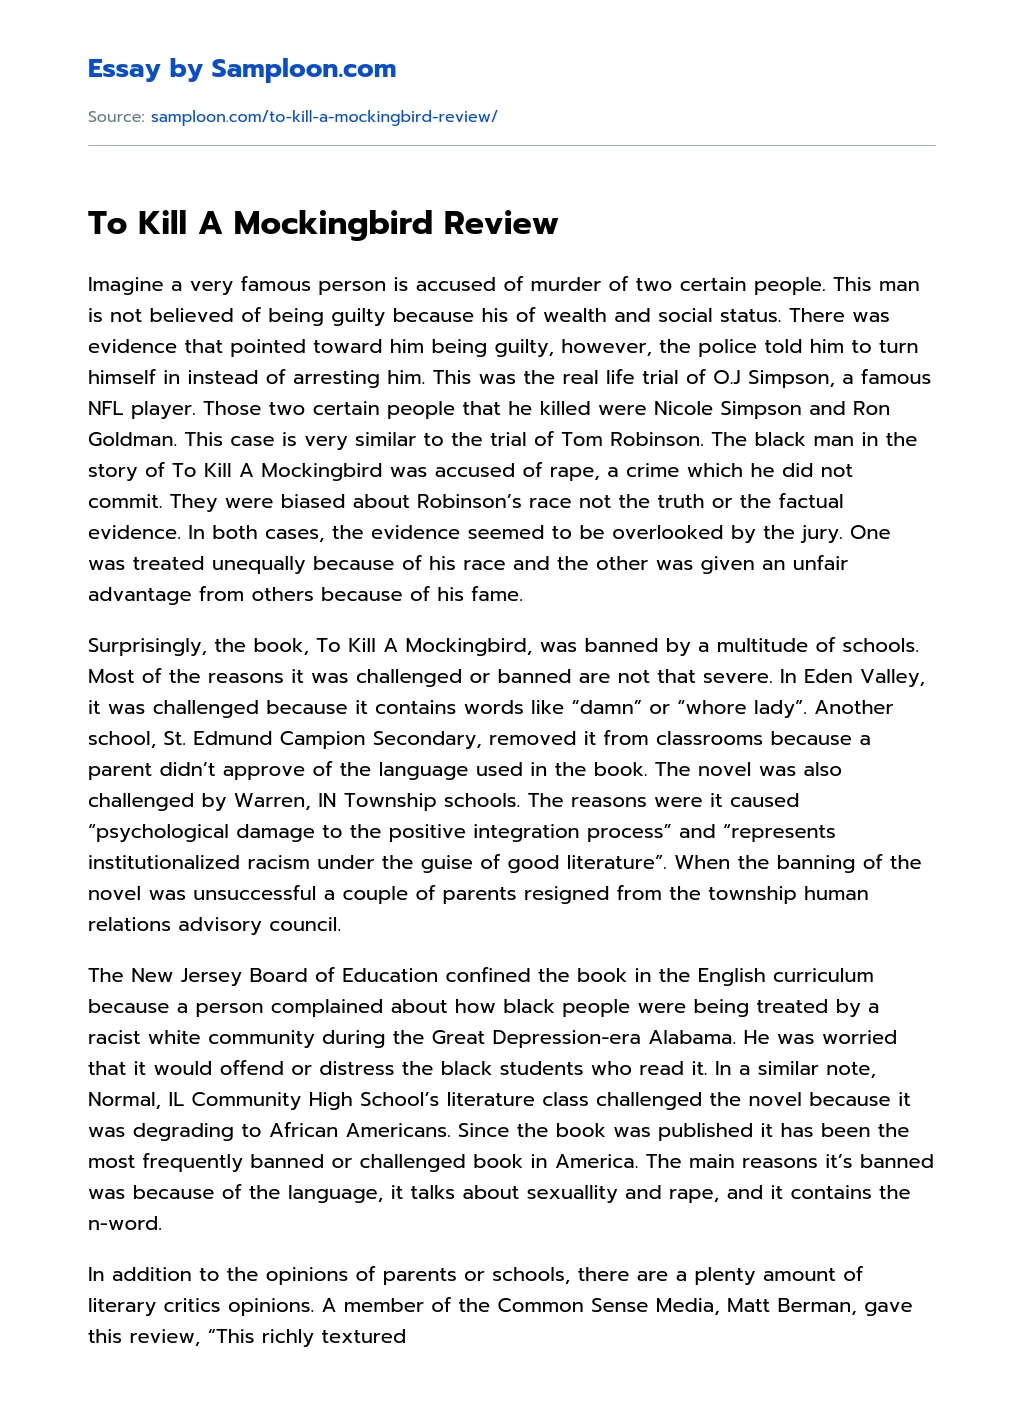 To Kill A Mockingbird Review essay